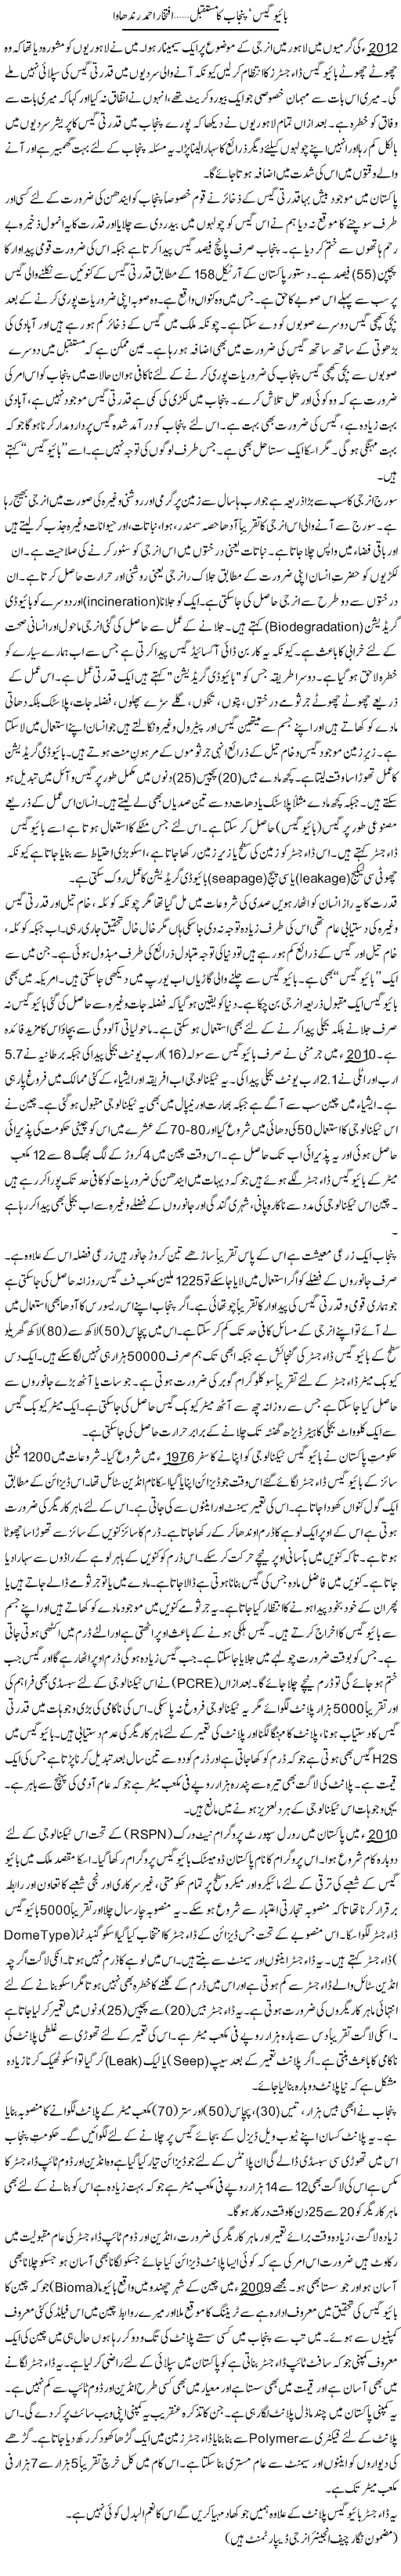 Bio Gas Punjab Ka Mustaqbil | Iftikhar Ahmad | Daily Urdu Columns